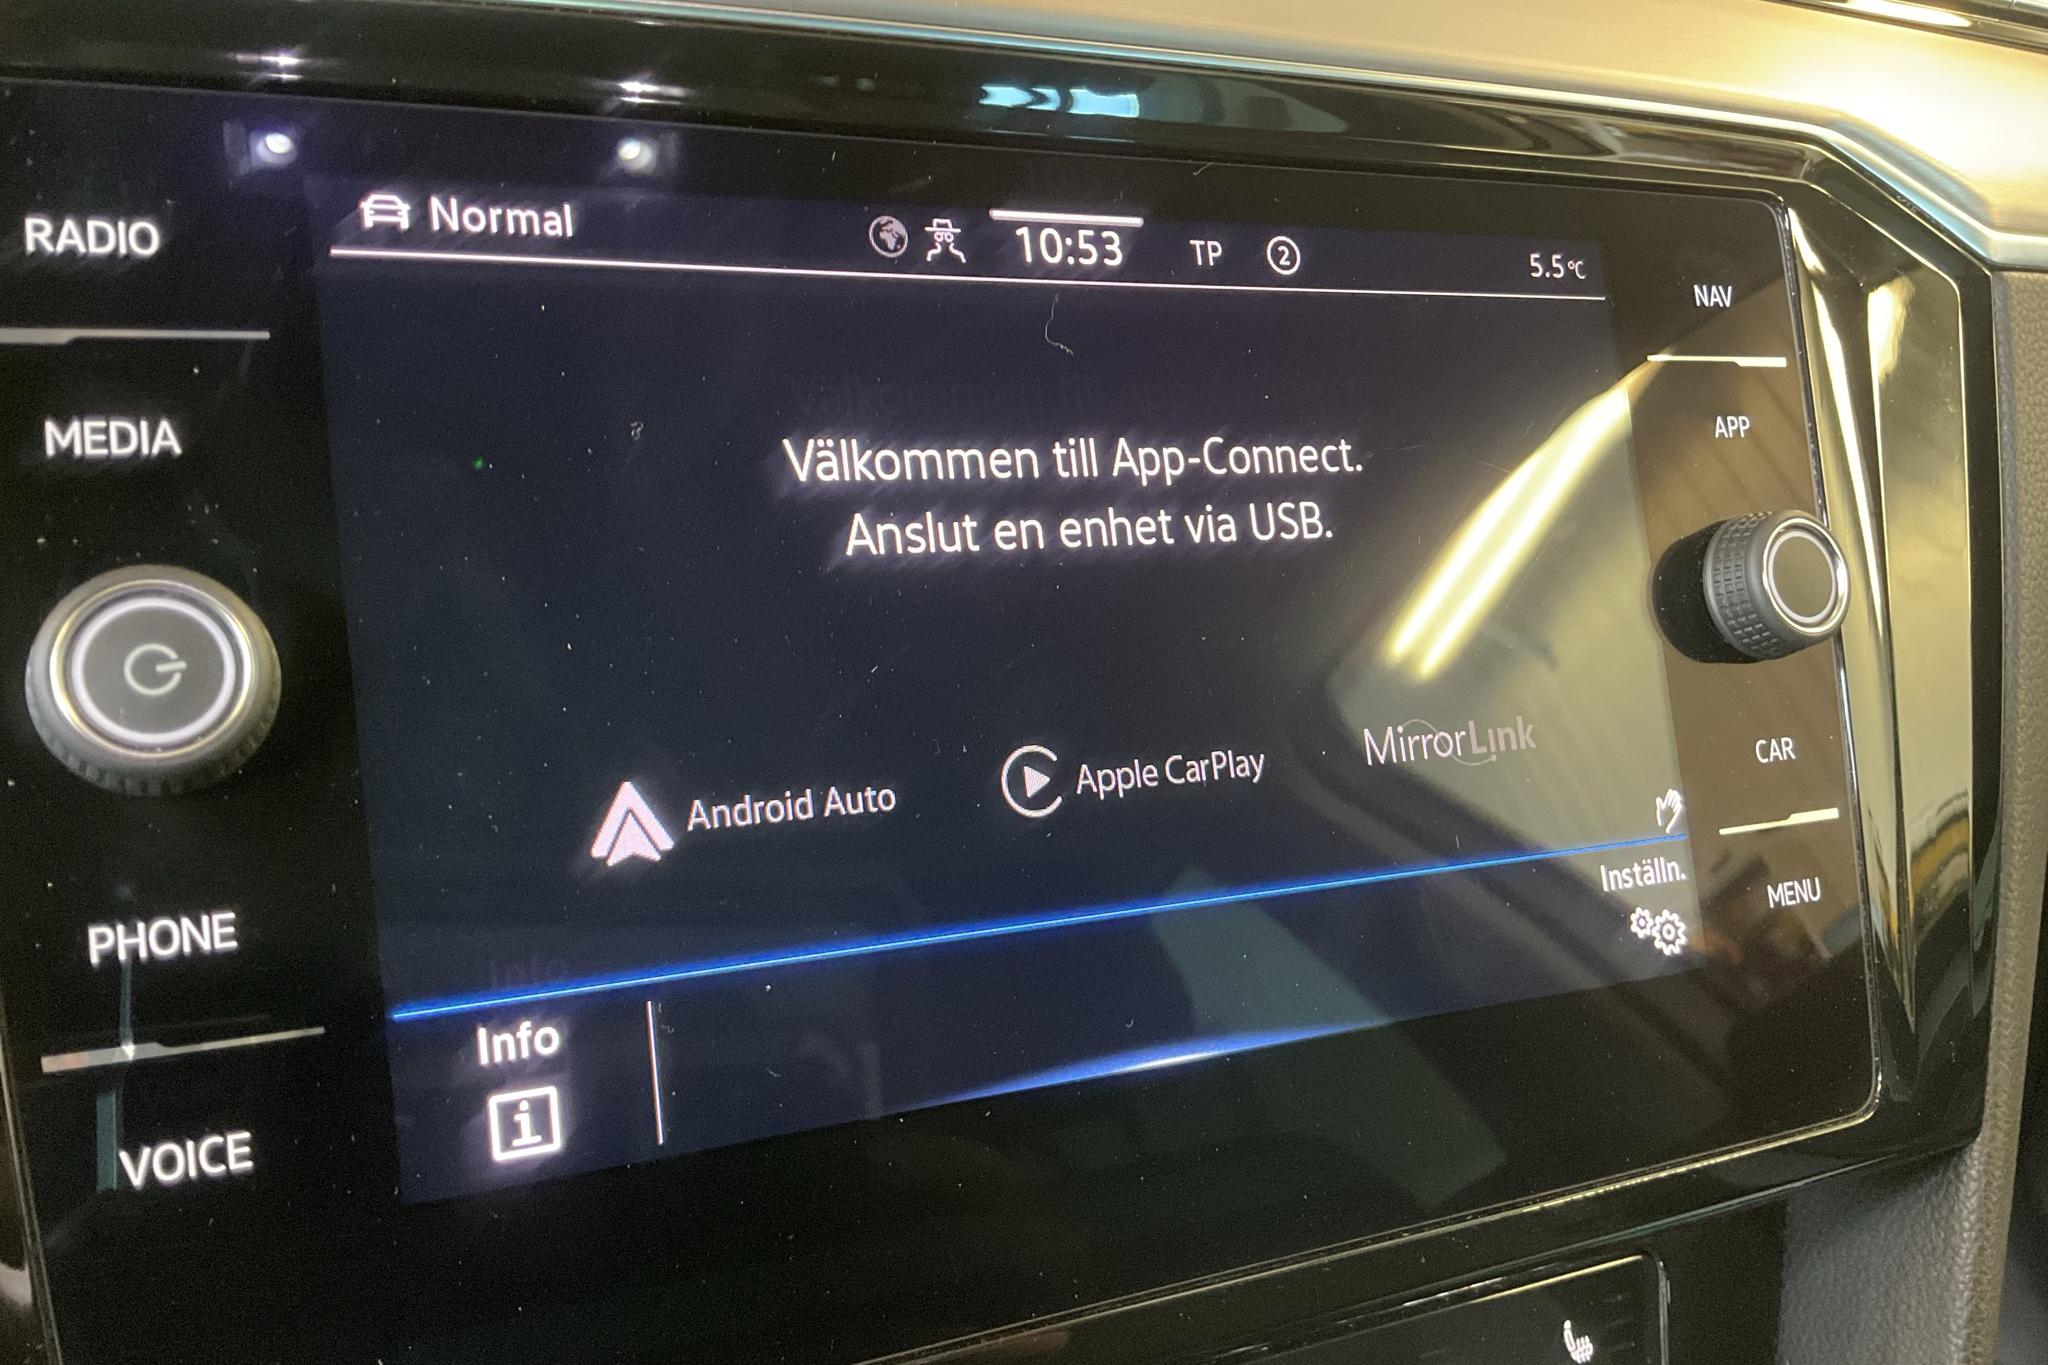 VW Passat Alltrack 2.0 TDI Sportscombi 4Motion (200hk) - 96 270 km - Automaattinen - valkoinen - 2021